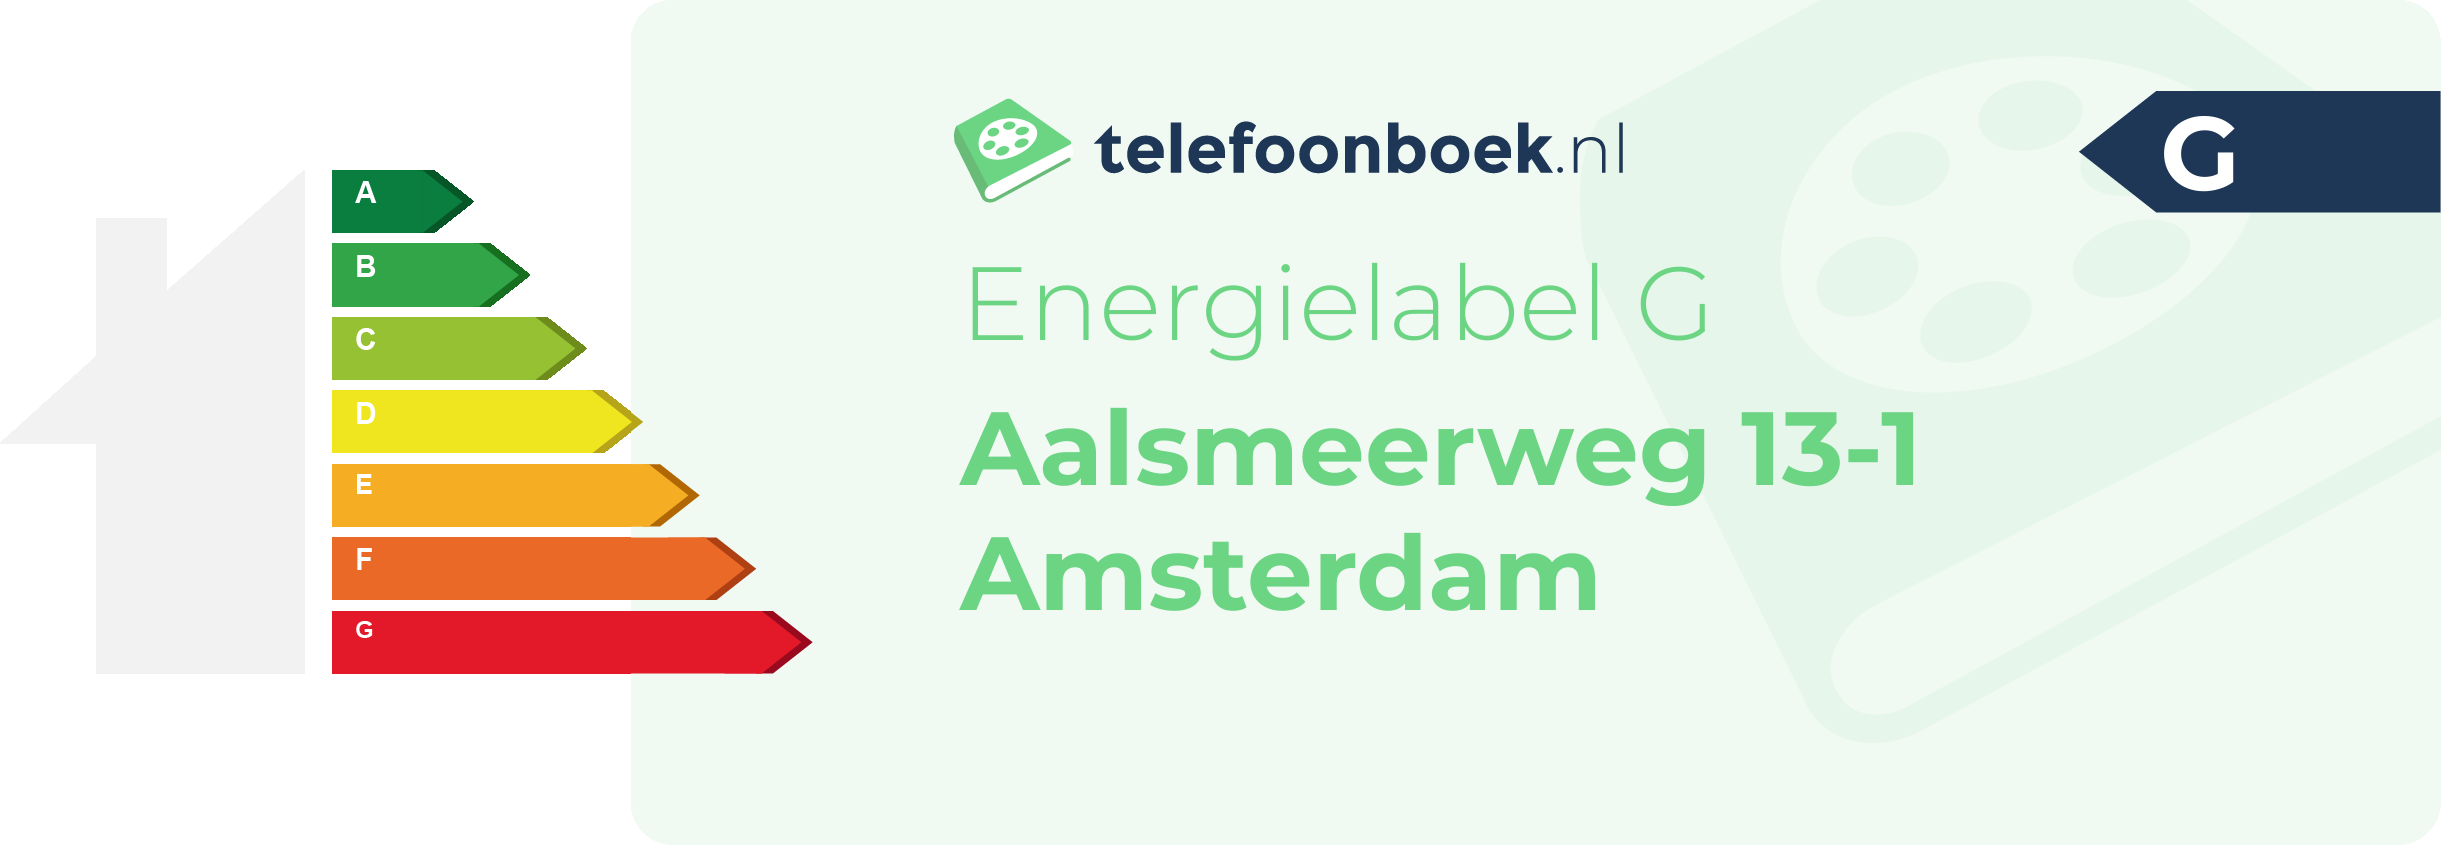 Energielabel Aalsmeerweg 13-1 Amsterdam